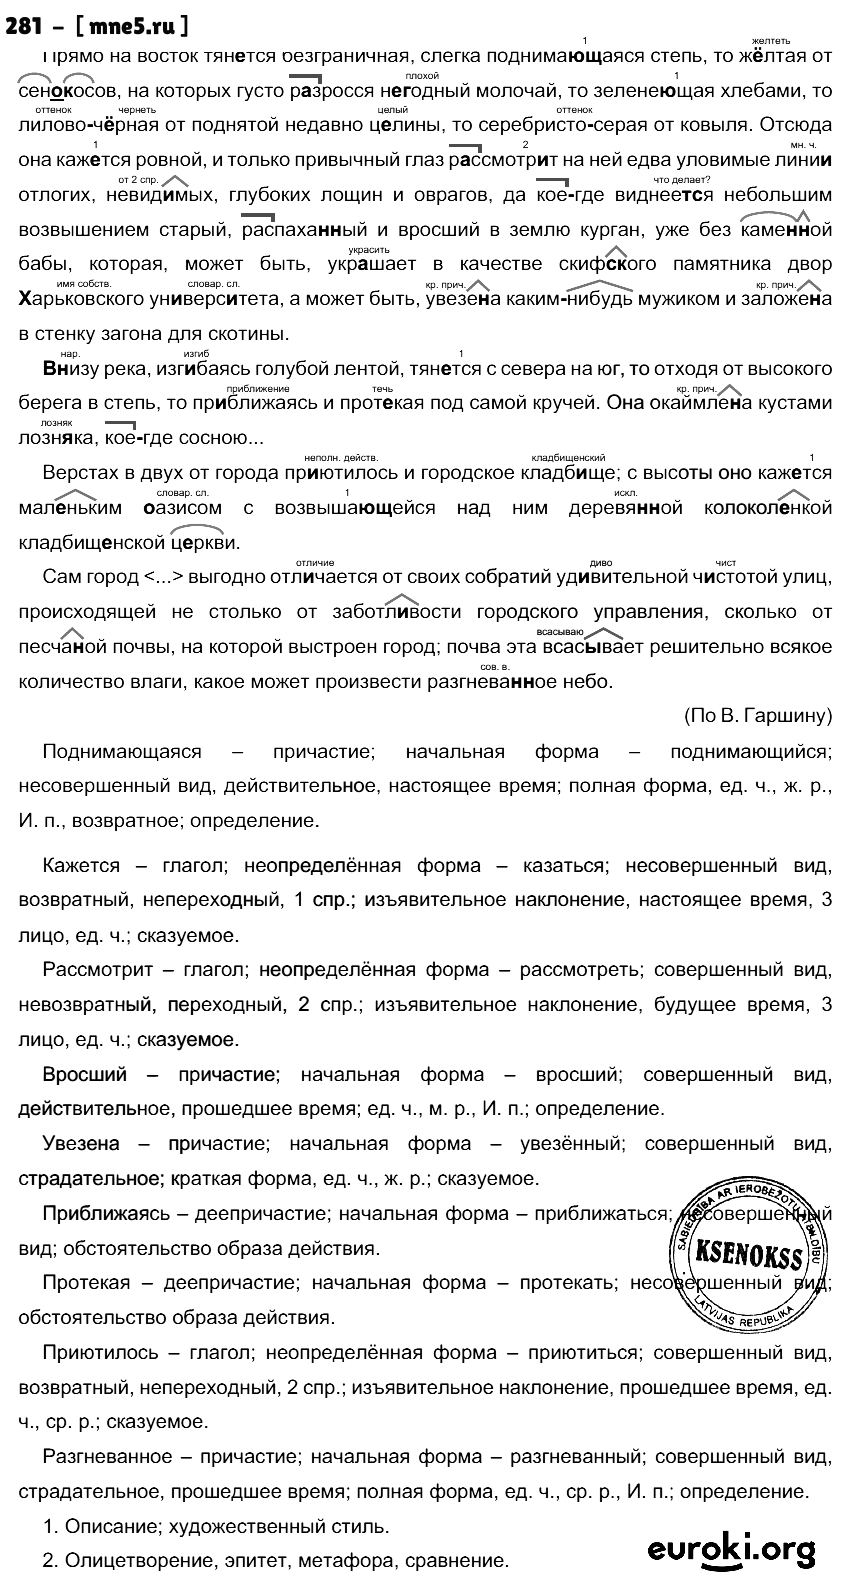 ГДЗ Русский язык 10 класс - 281